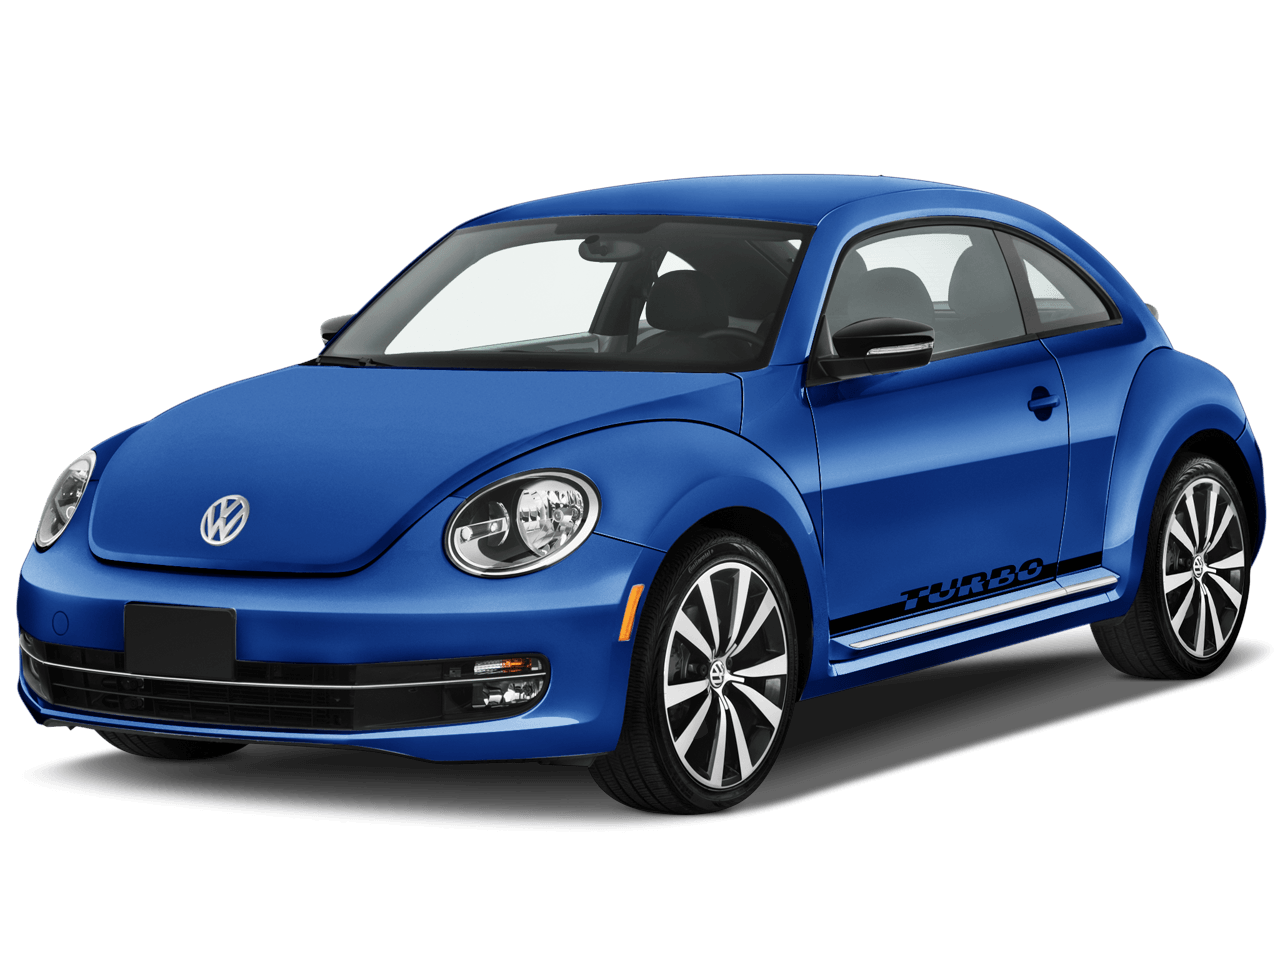 Blue Volkswagen Beetle Png Car Image PNG Image